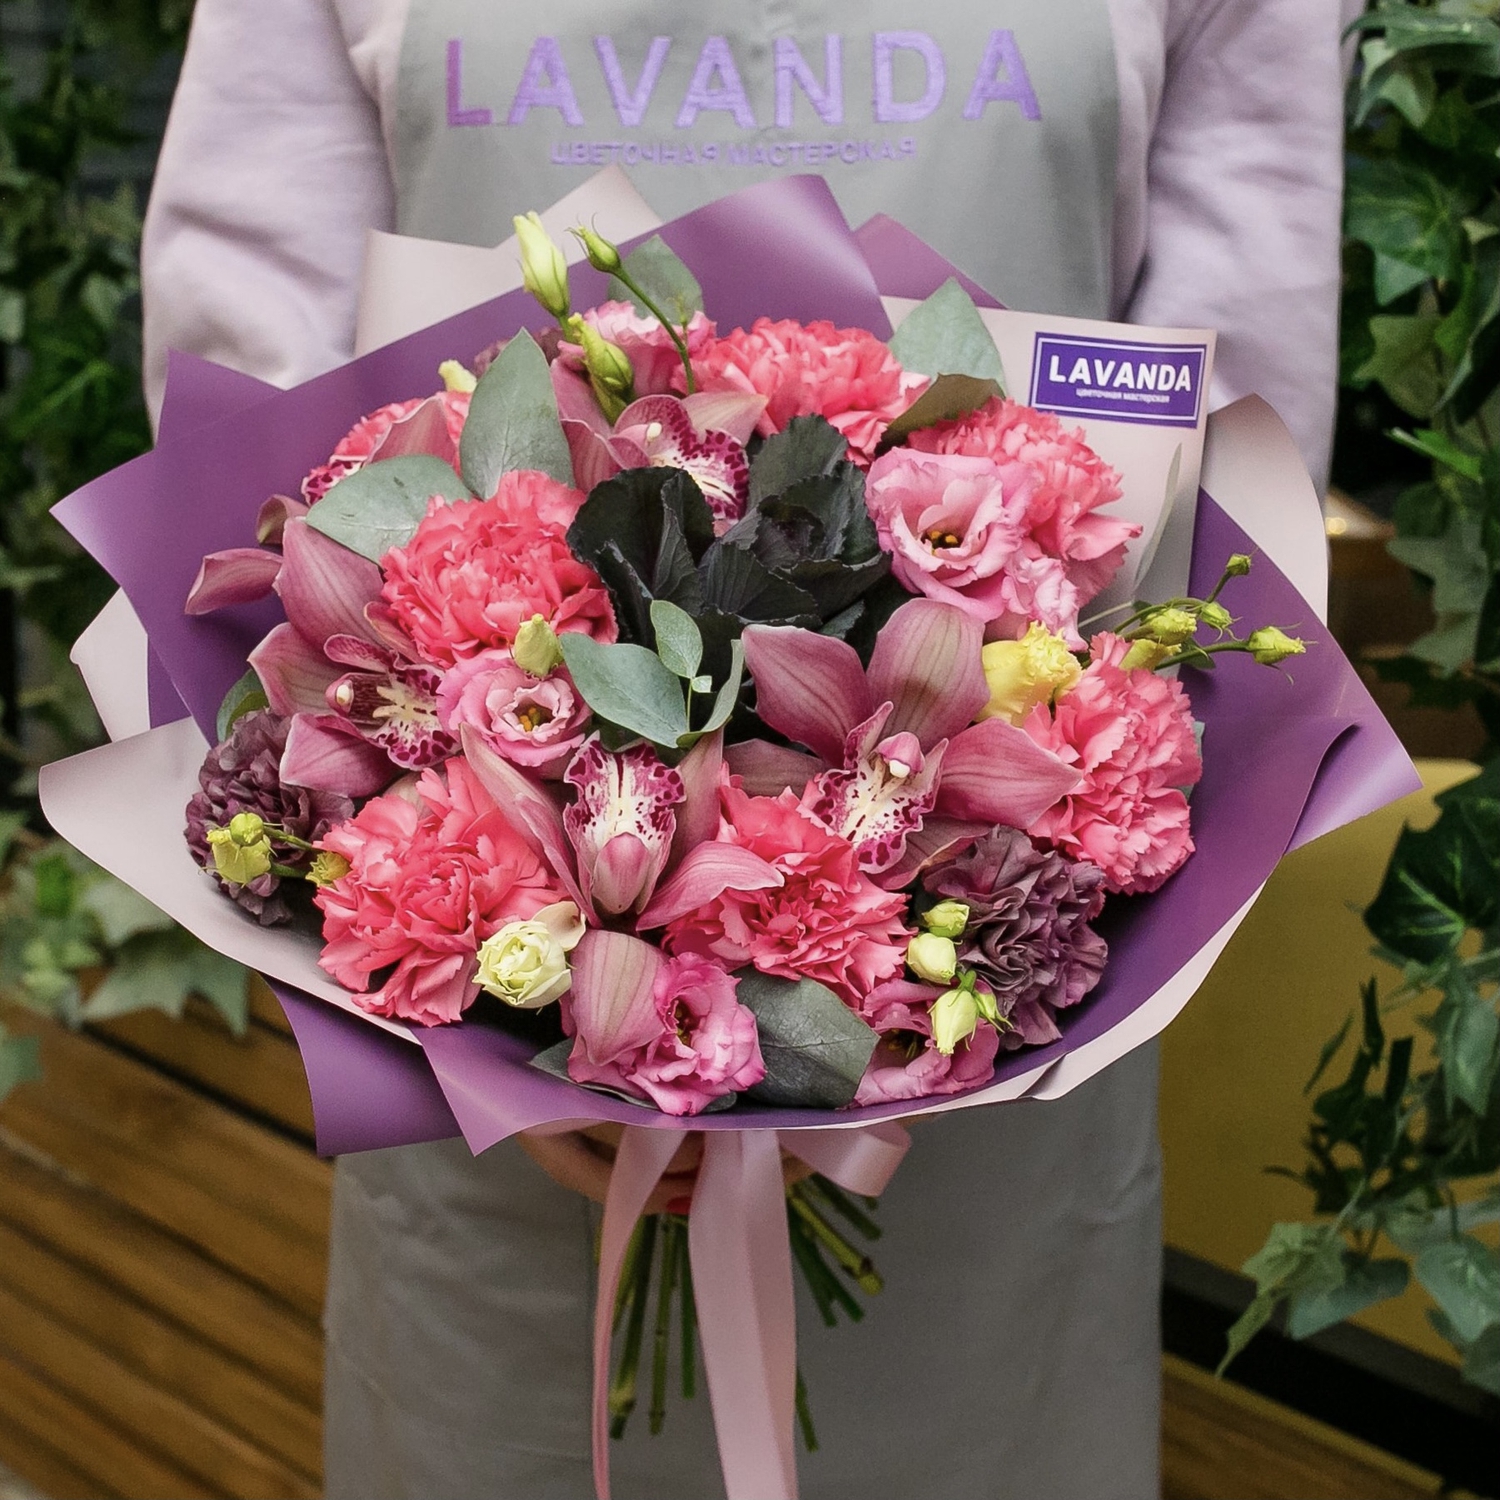 Букет розовых орхидей, эустом и диантусов с брасикой